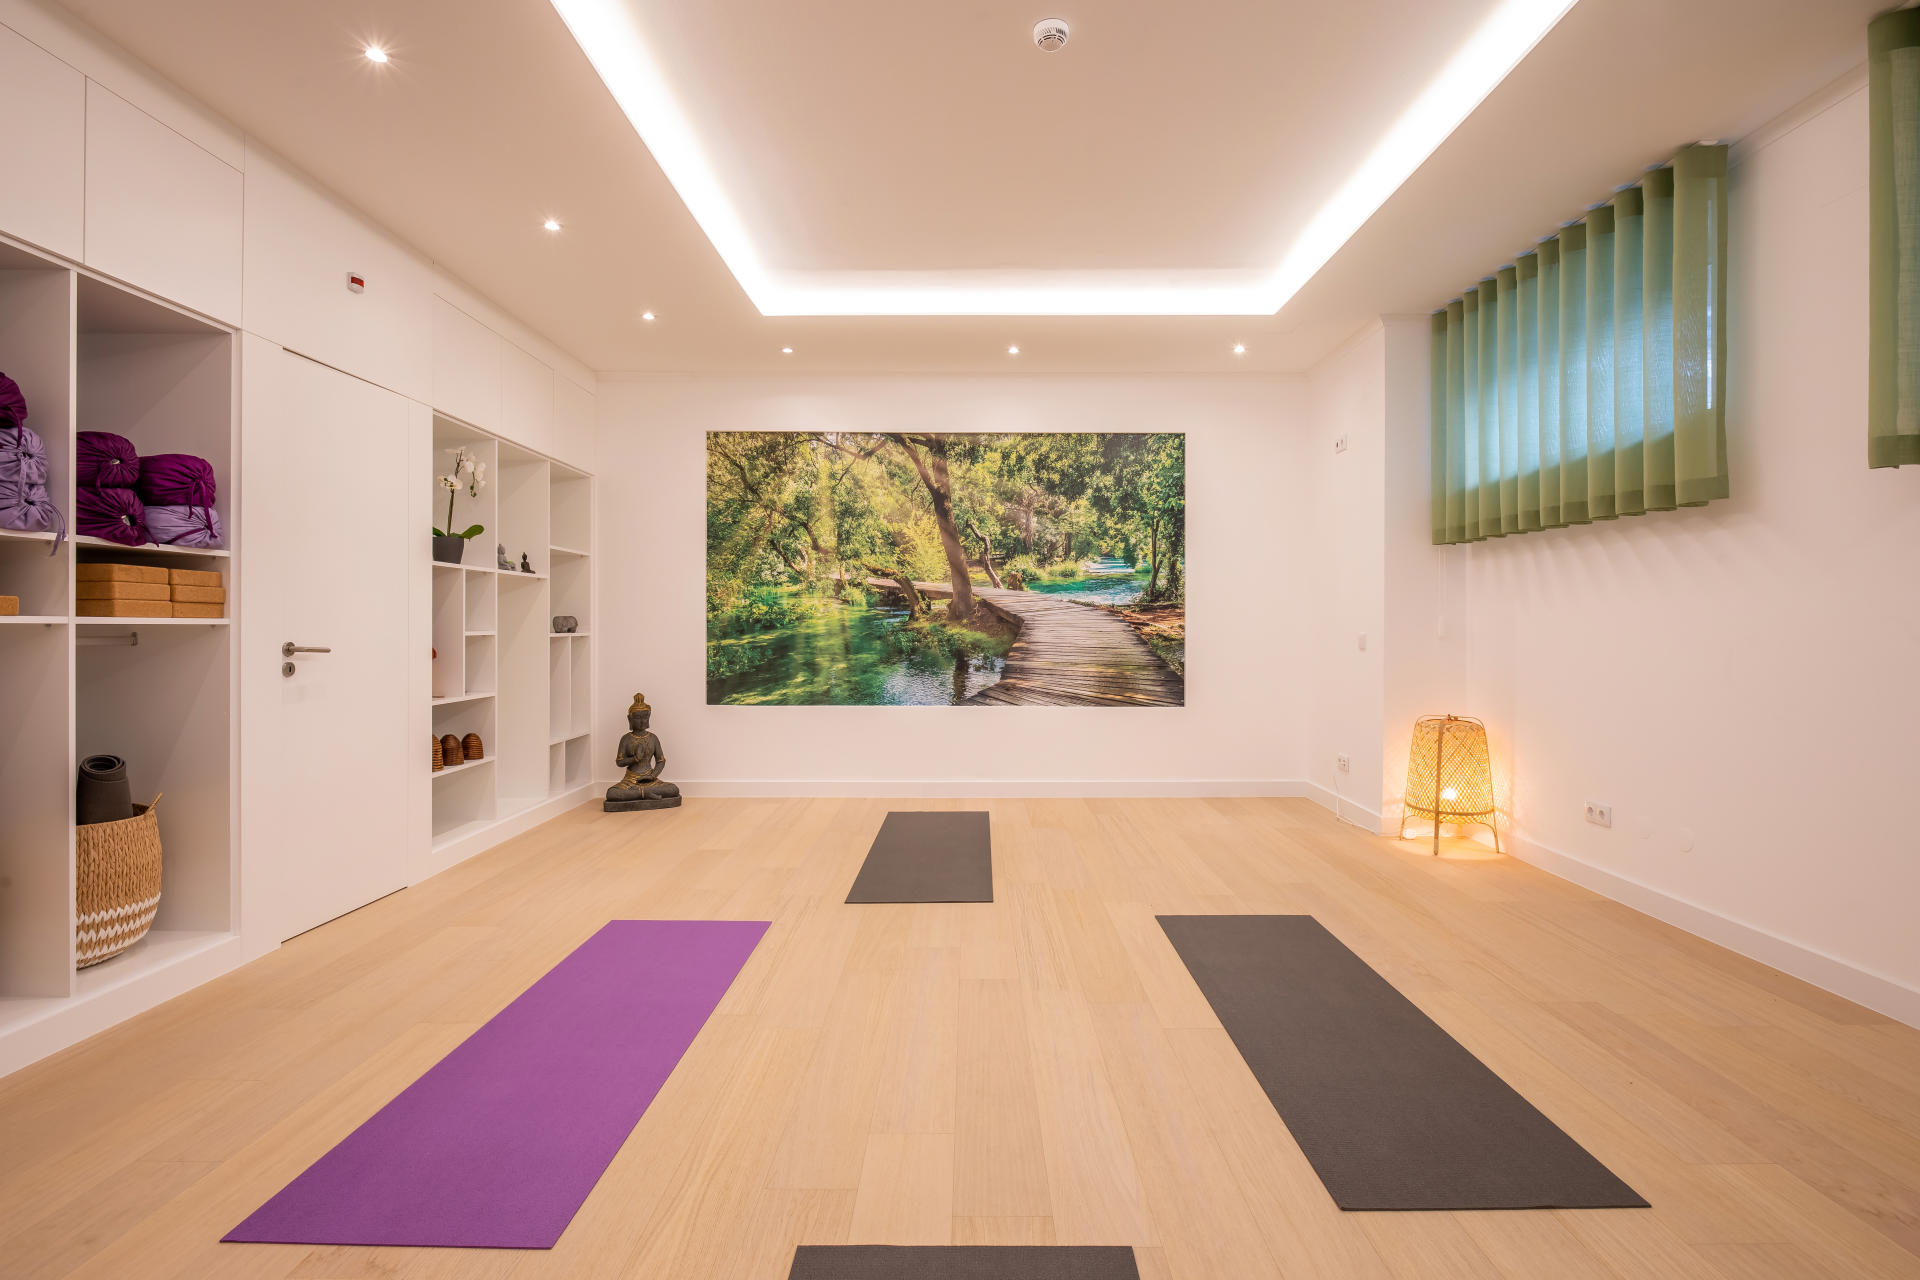 Location studio de Yoga Algarve